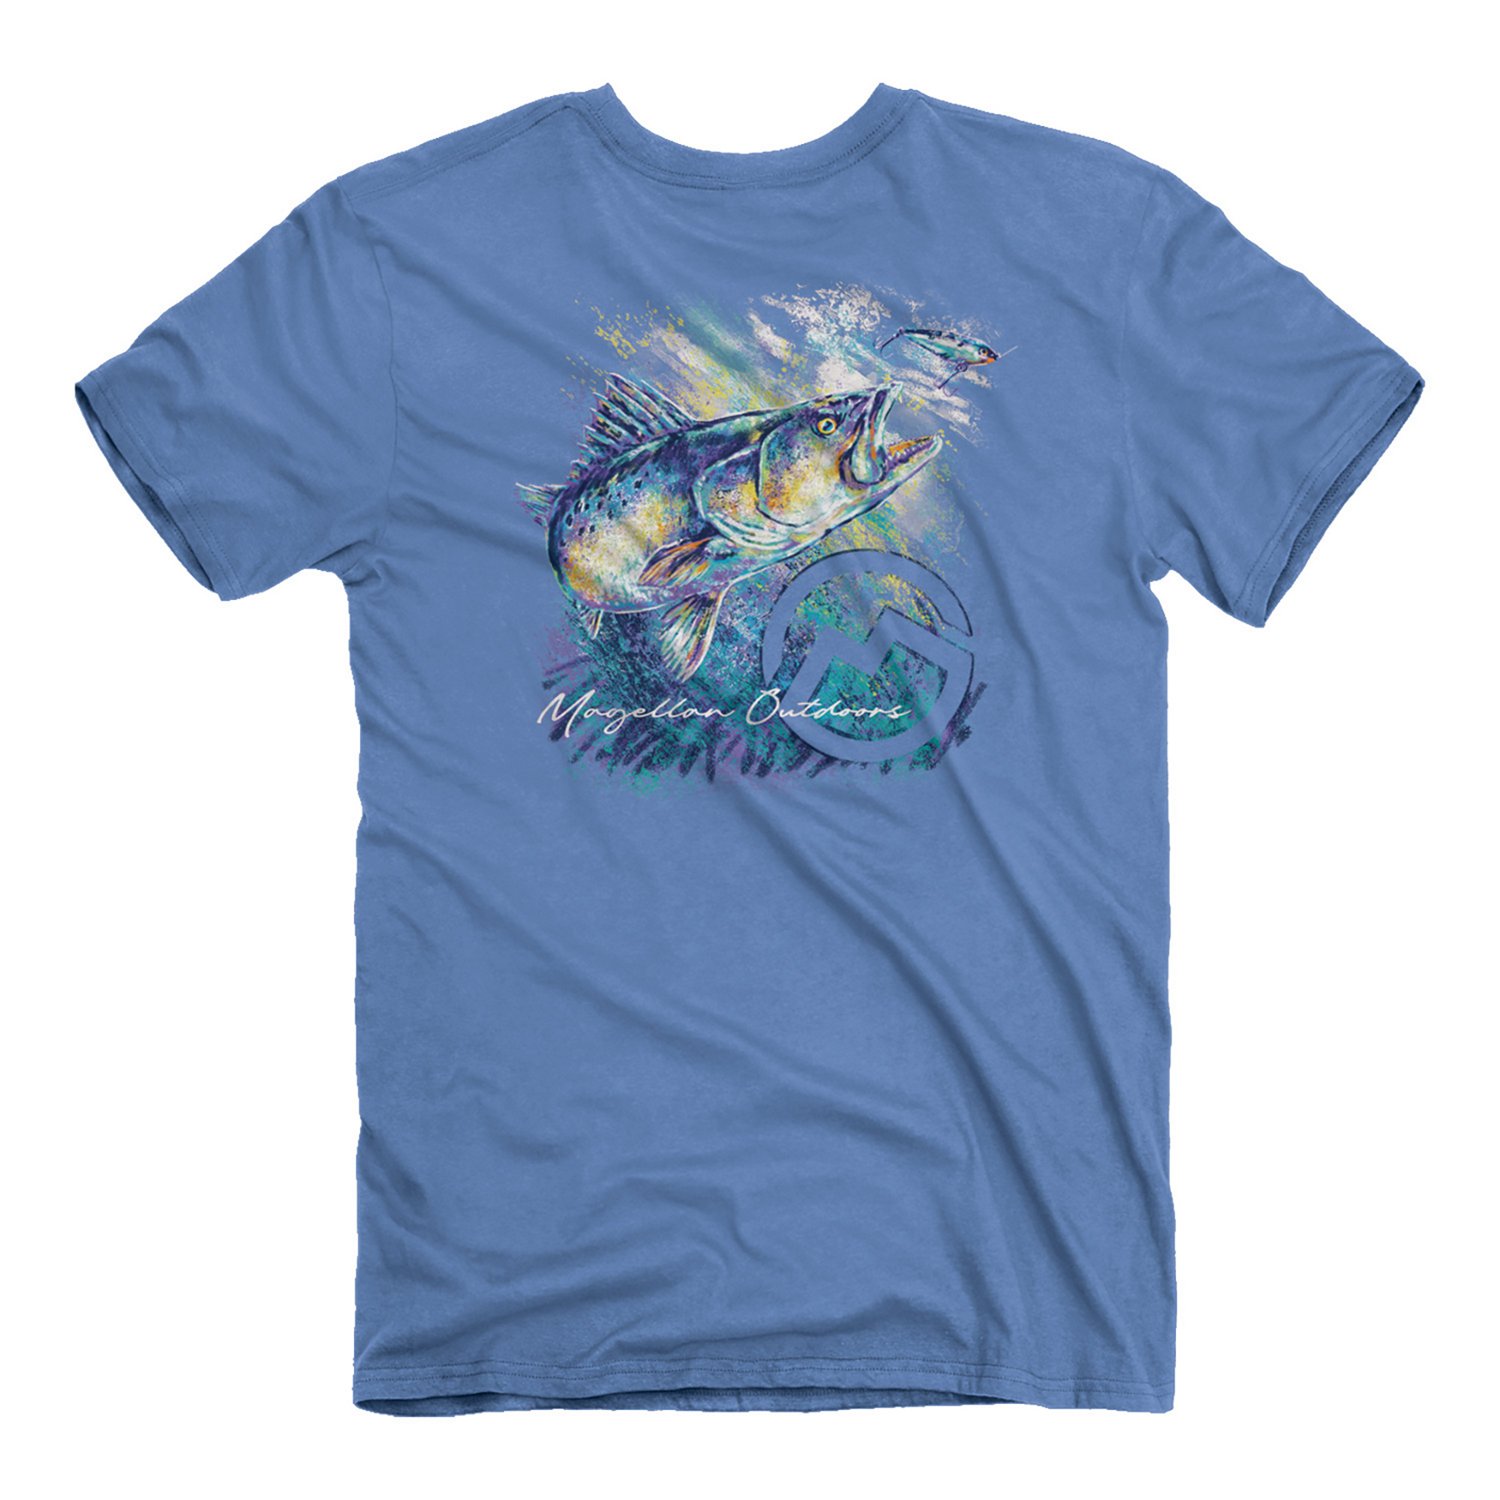 Magellan Outdoors Fishing T-shirt 